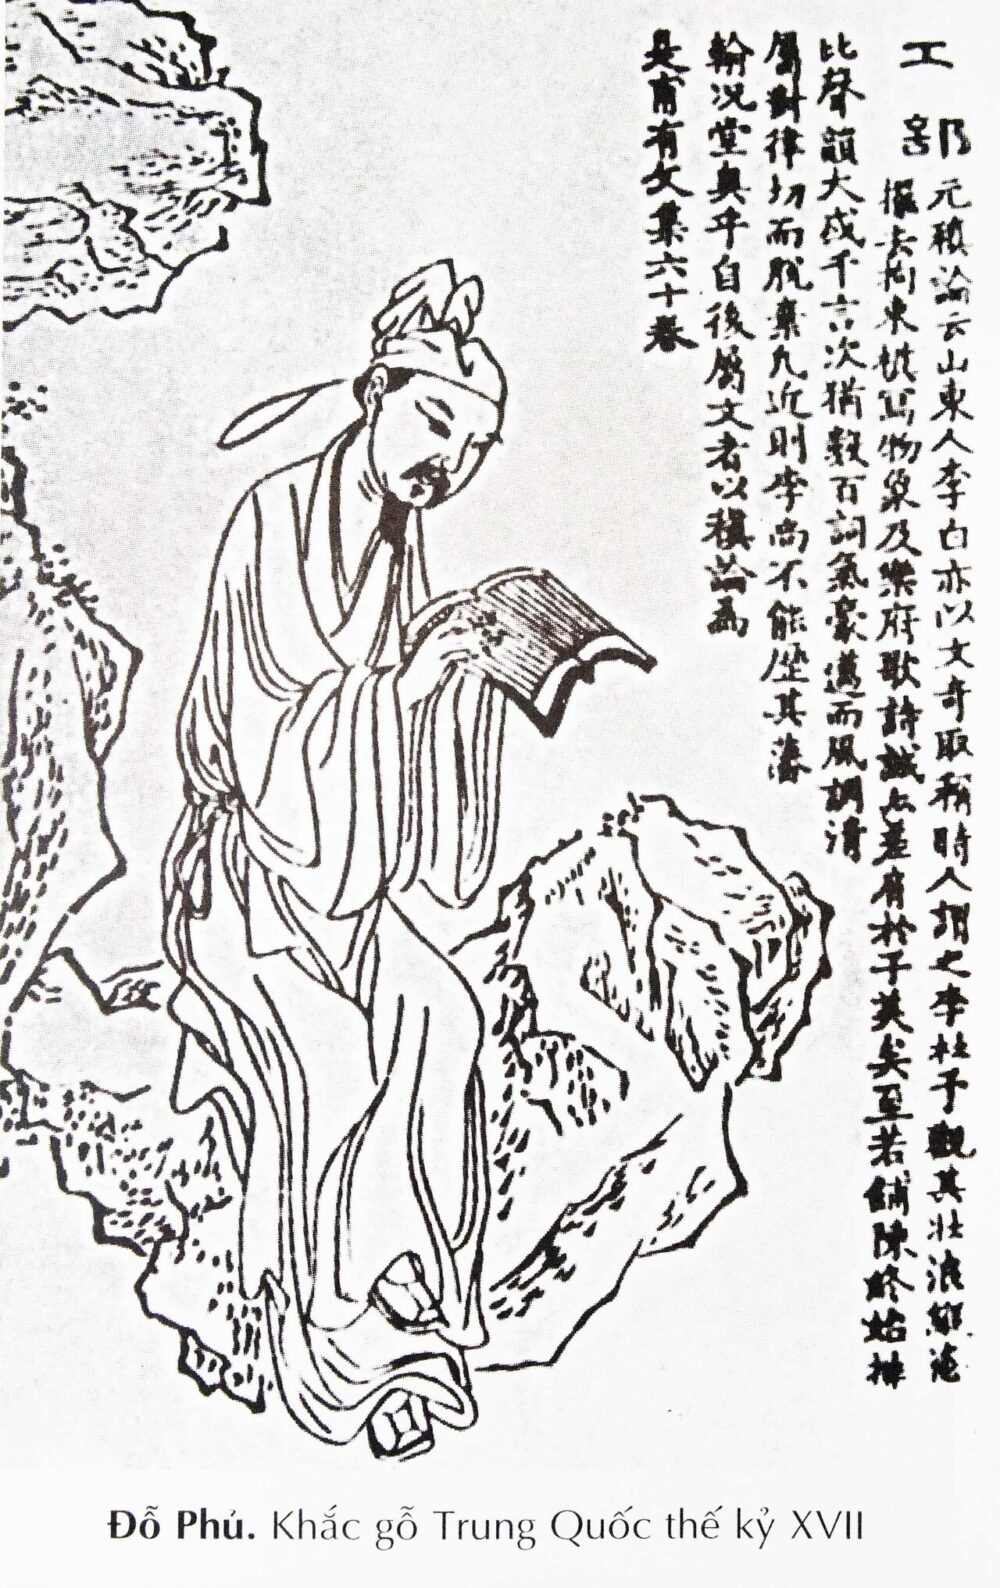 do phu 1 e1610207862475 - Đỗ Phủ: Ánh trăng sáng muôn thuở của thơ ca Trung Hoa